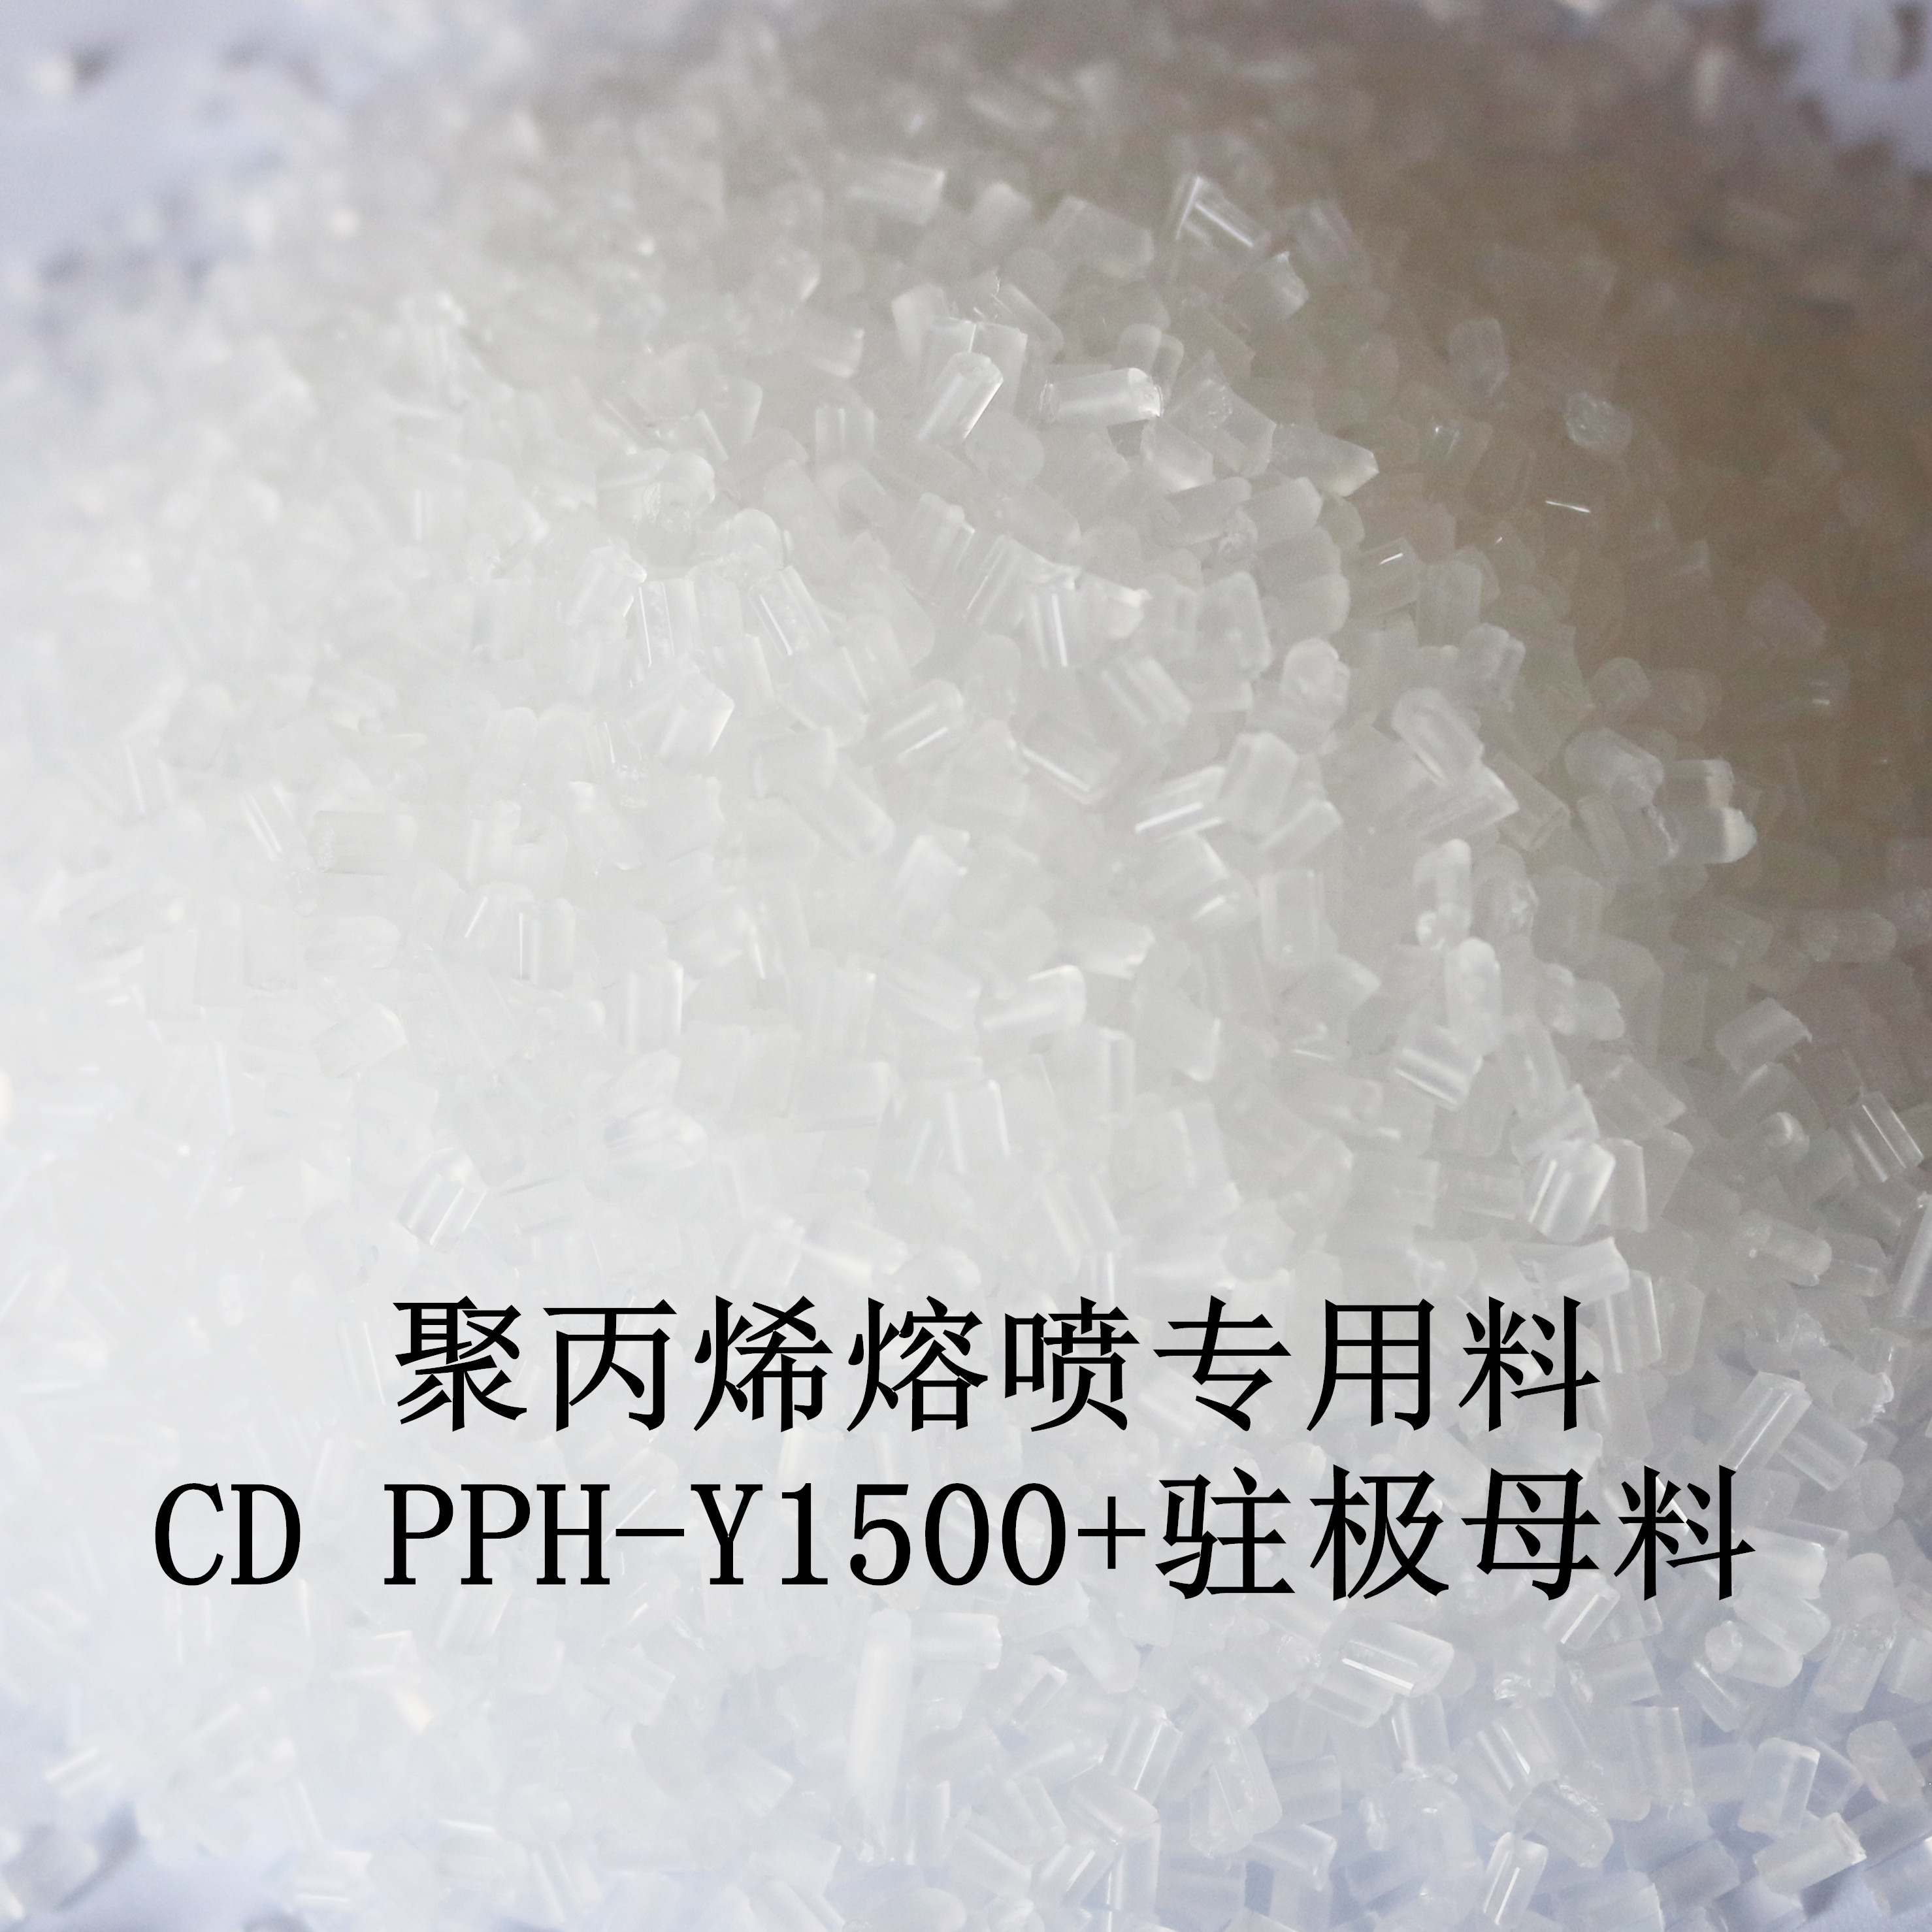 聚丙烯熔喷专用料  CD PPH-Y1500+驻极母料